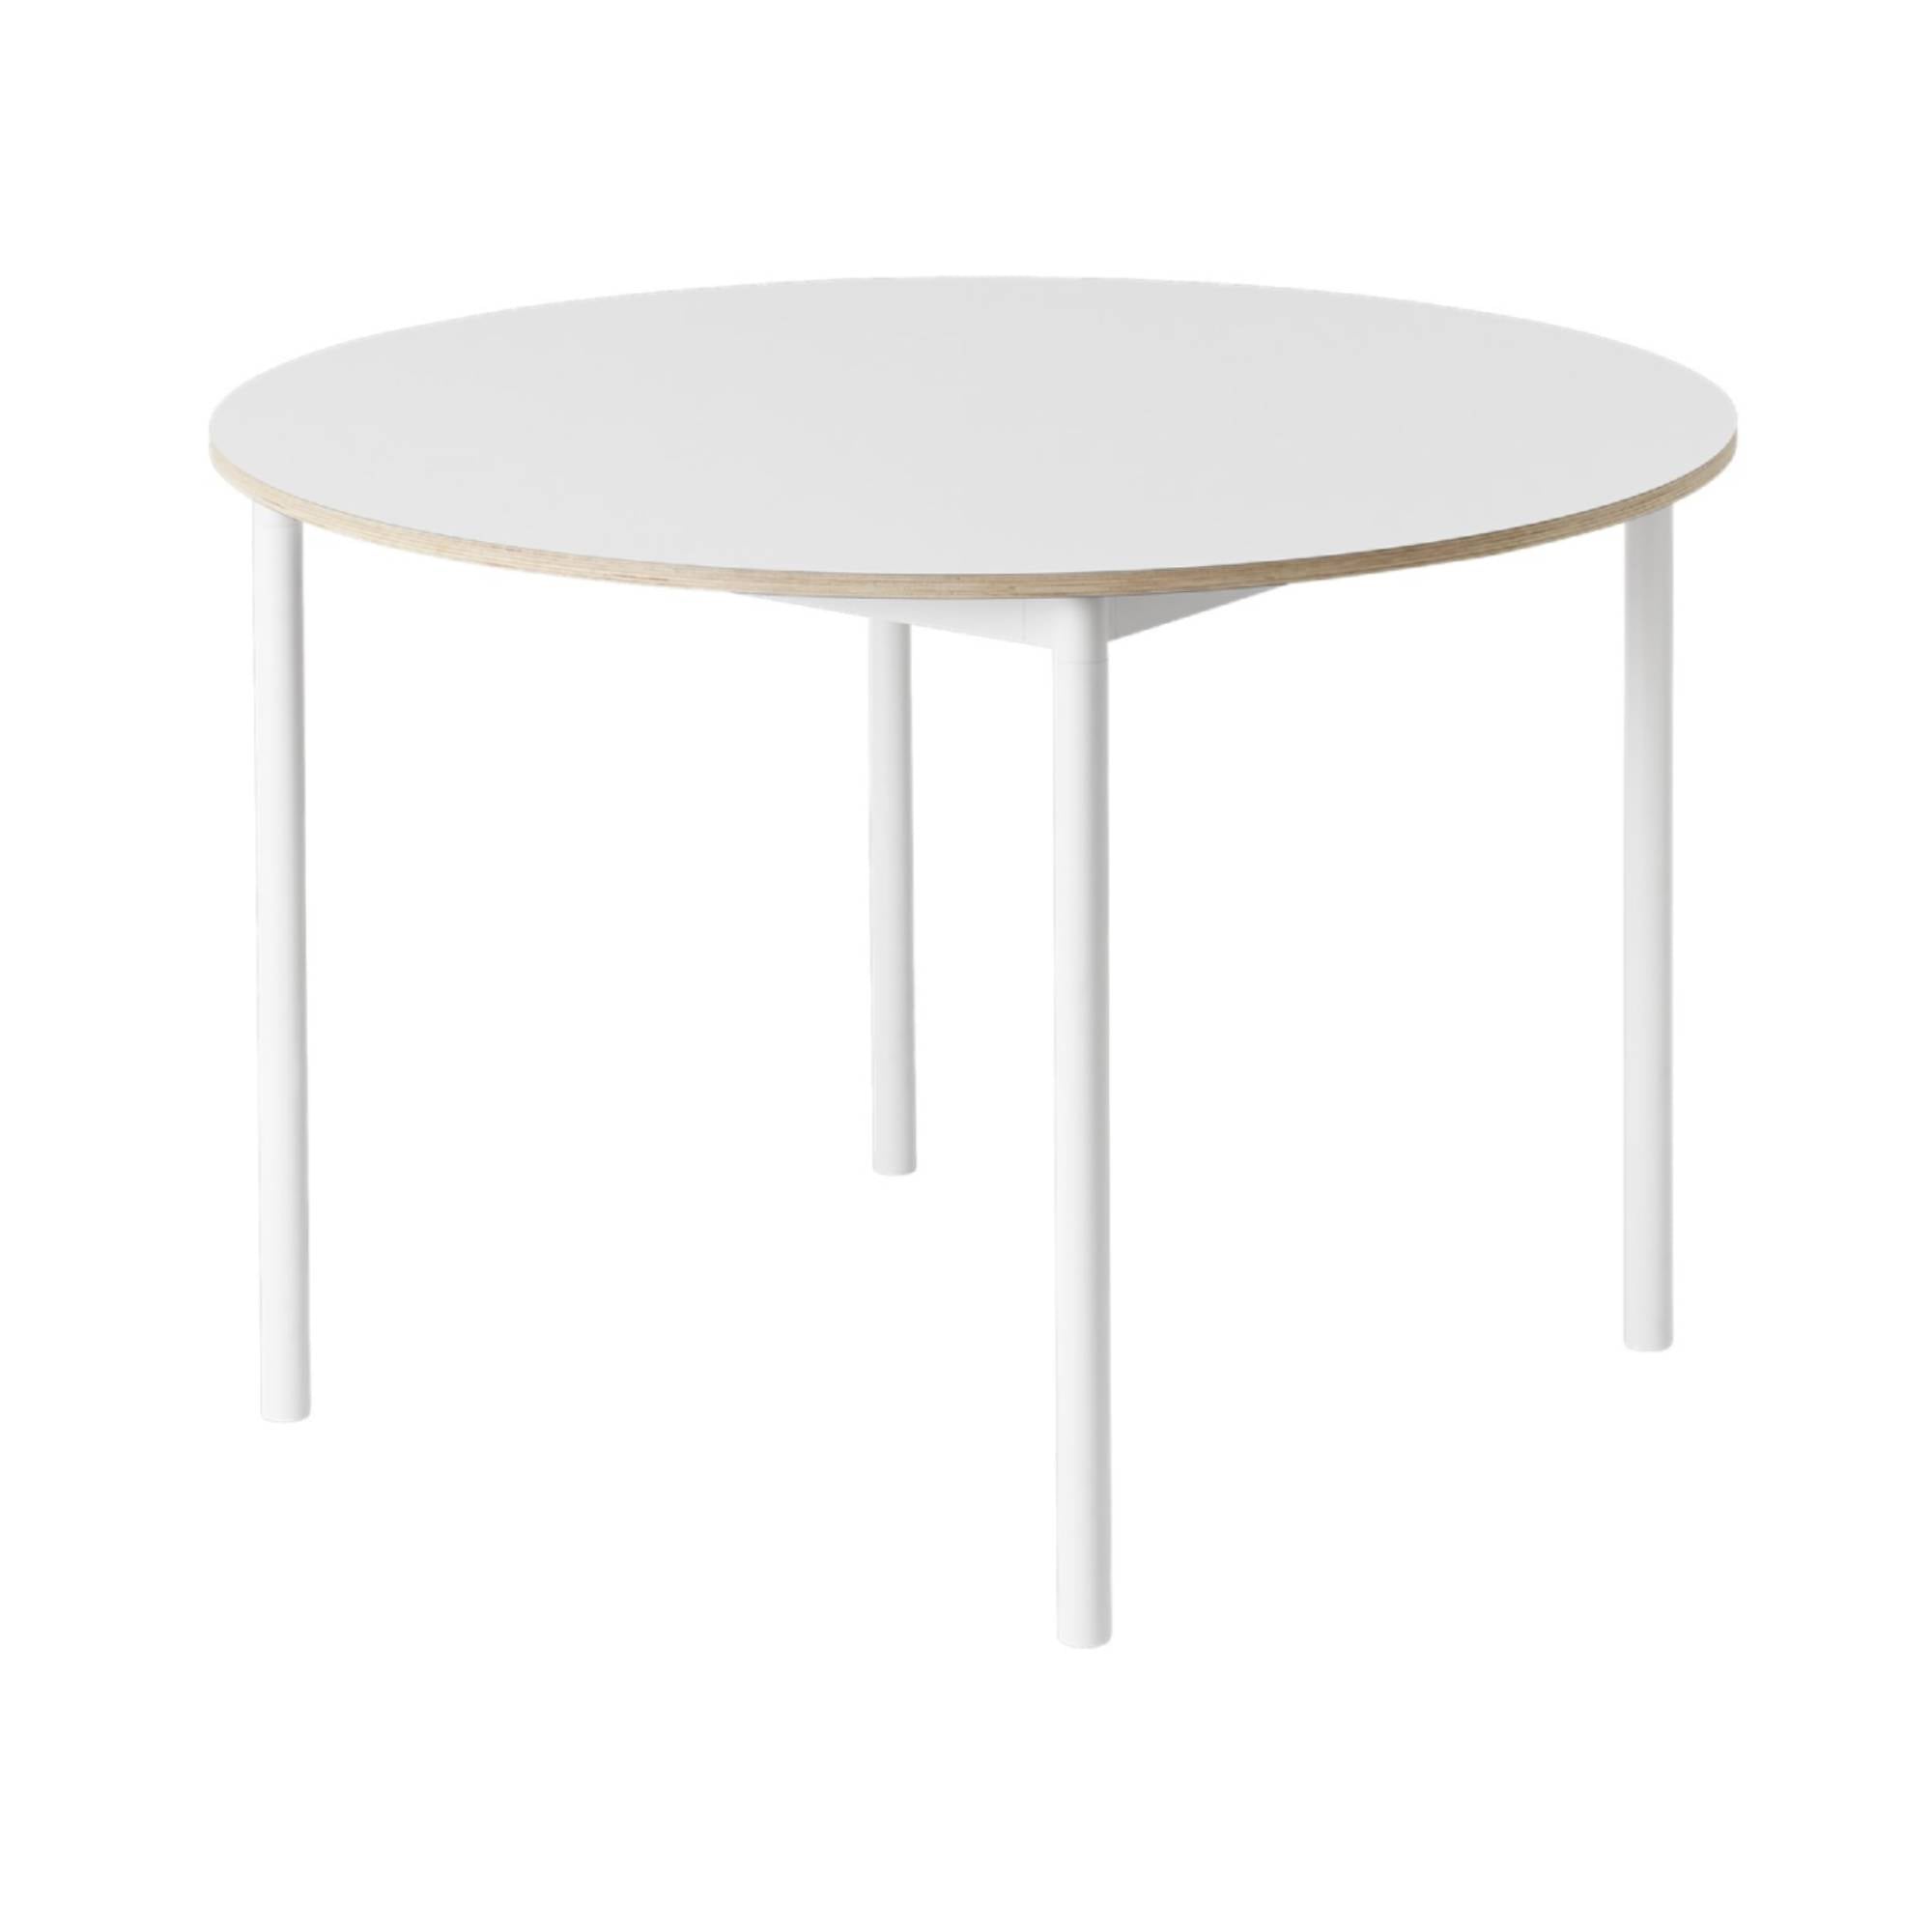 Base Table: Round  + White Laminate + Plywood Edge + White